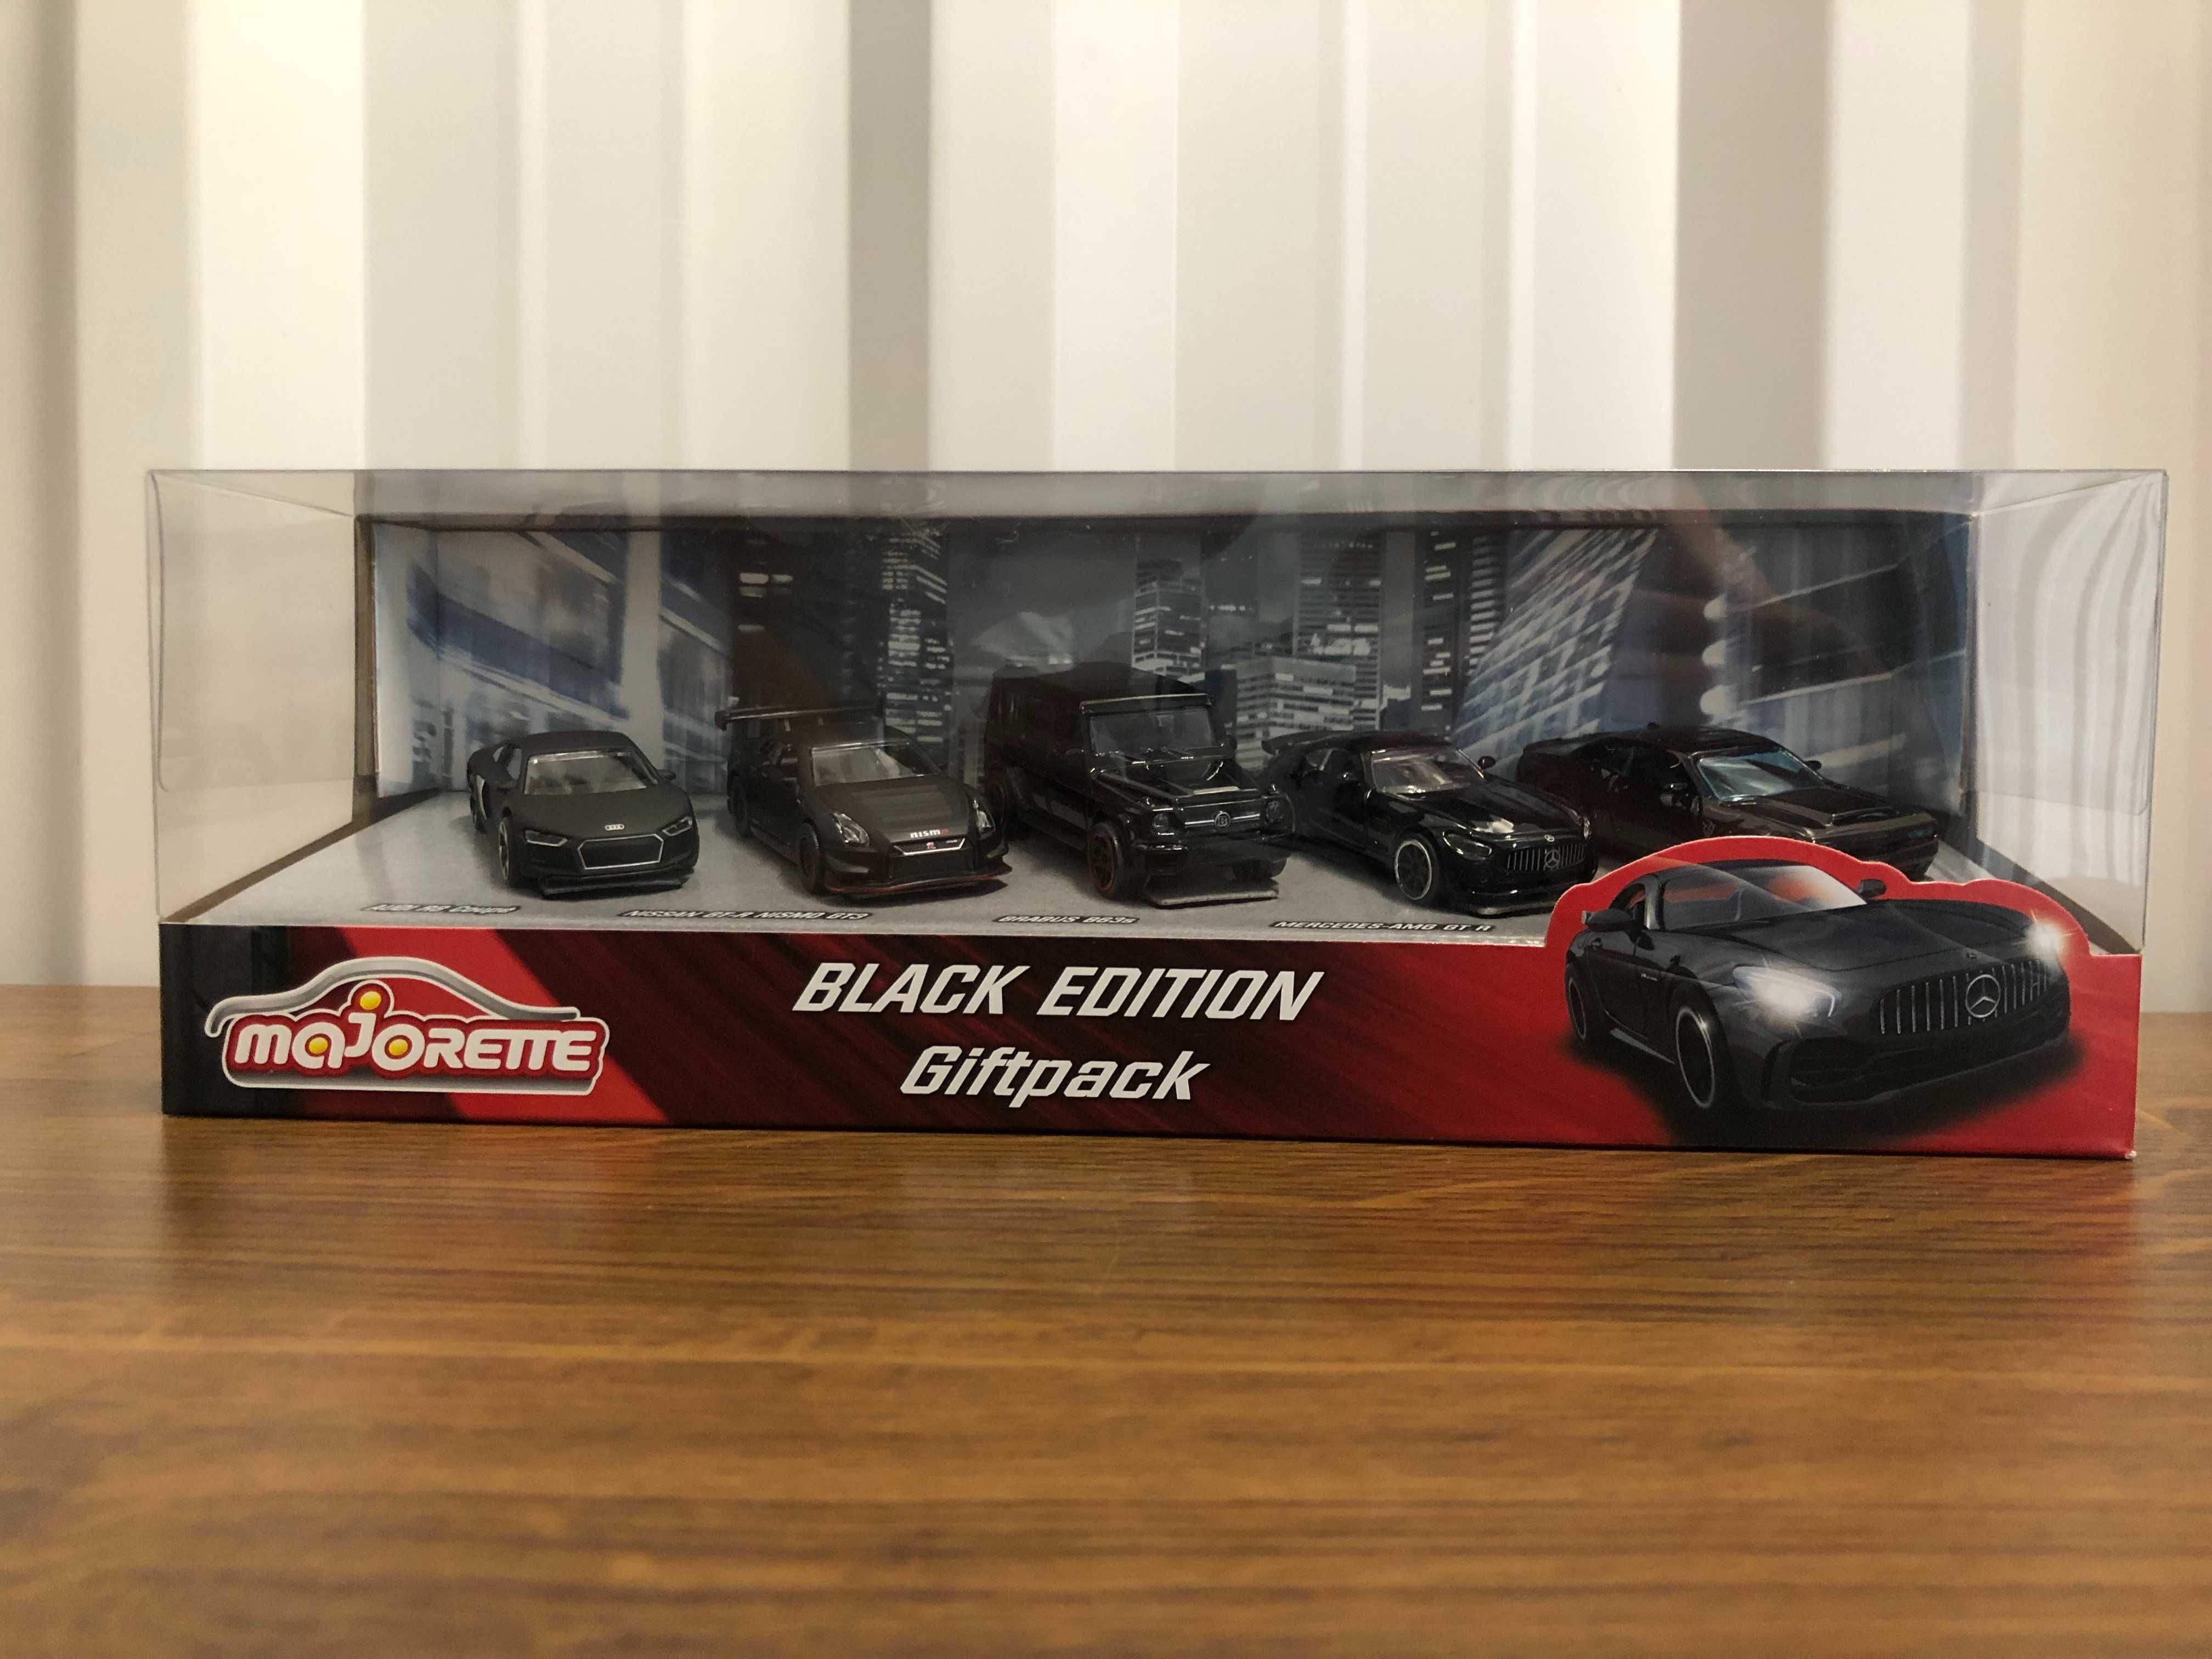 Black Edition Giftpack (Majorette)